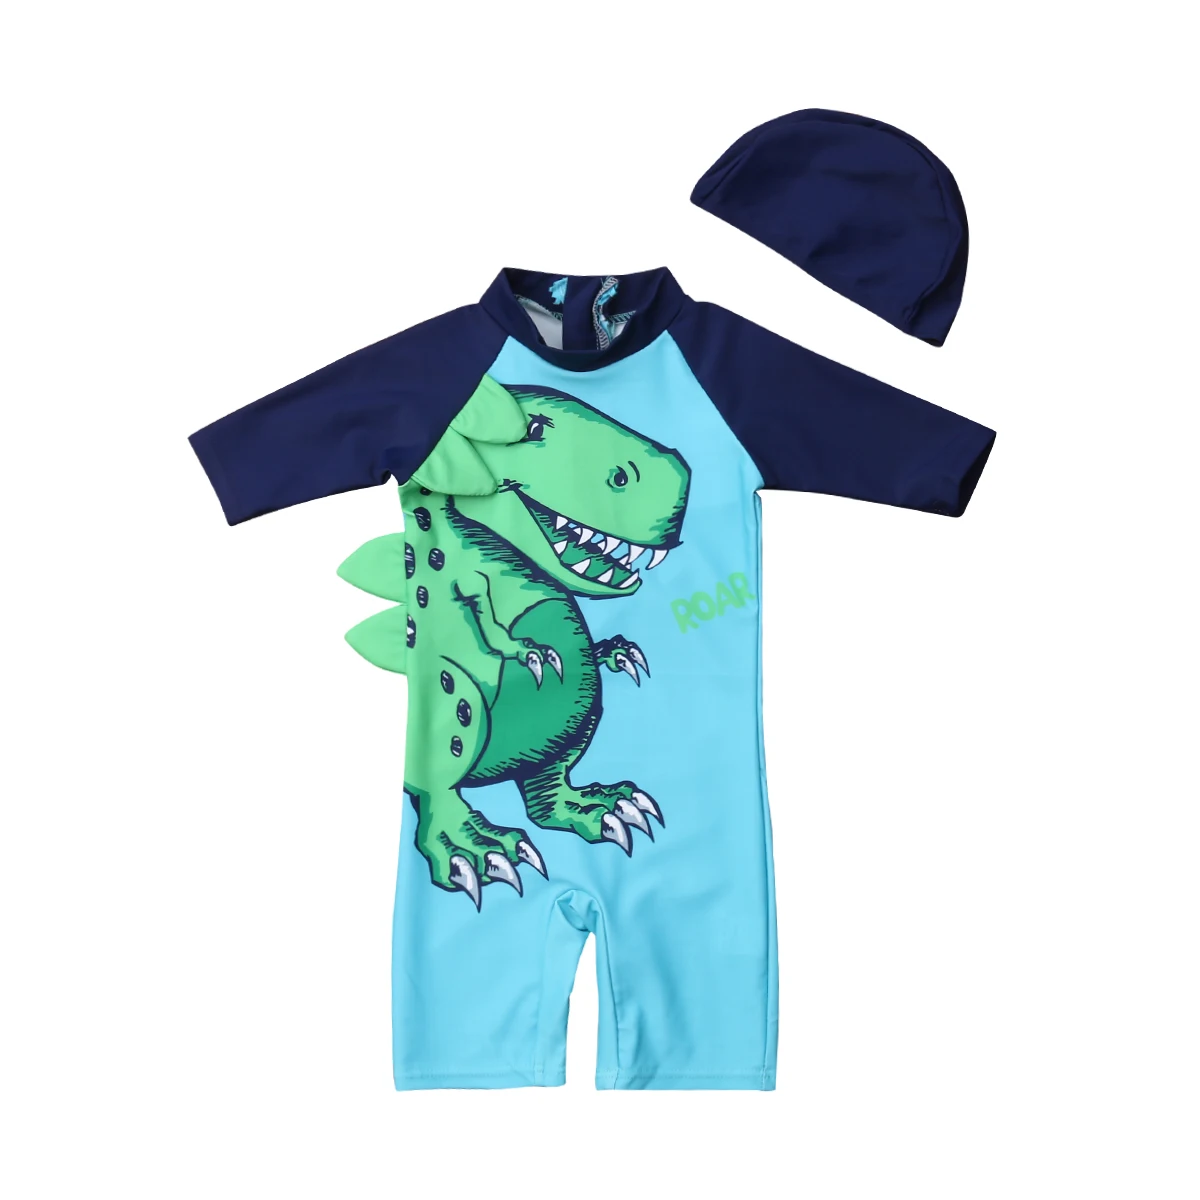 Купальник для маленьких мальчиков Солнцезащитный купальник с динозавром из мультфильма, купальный костюм с головным убором для детей 1-6 лет